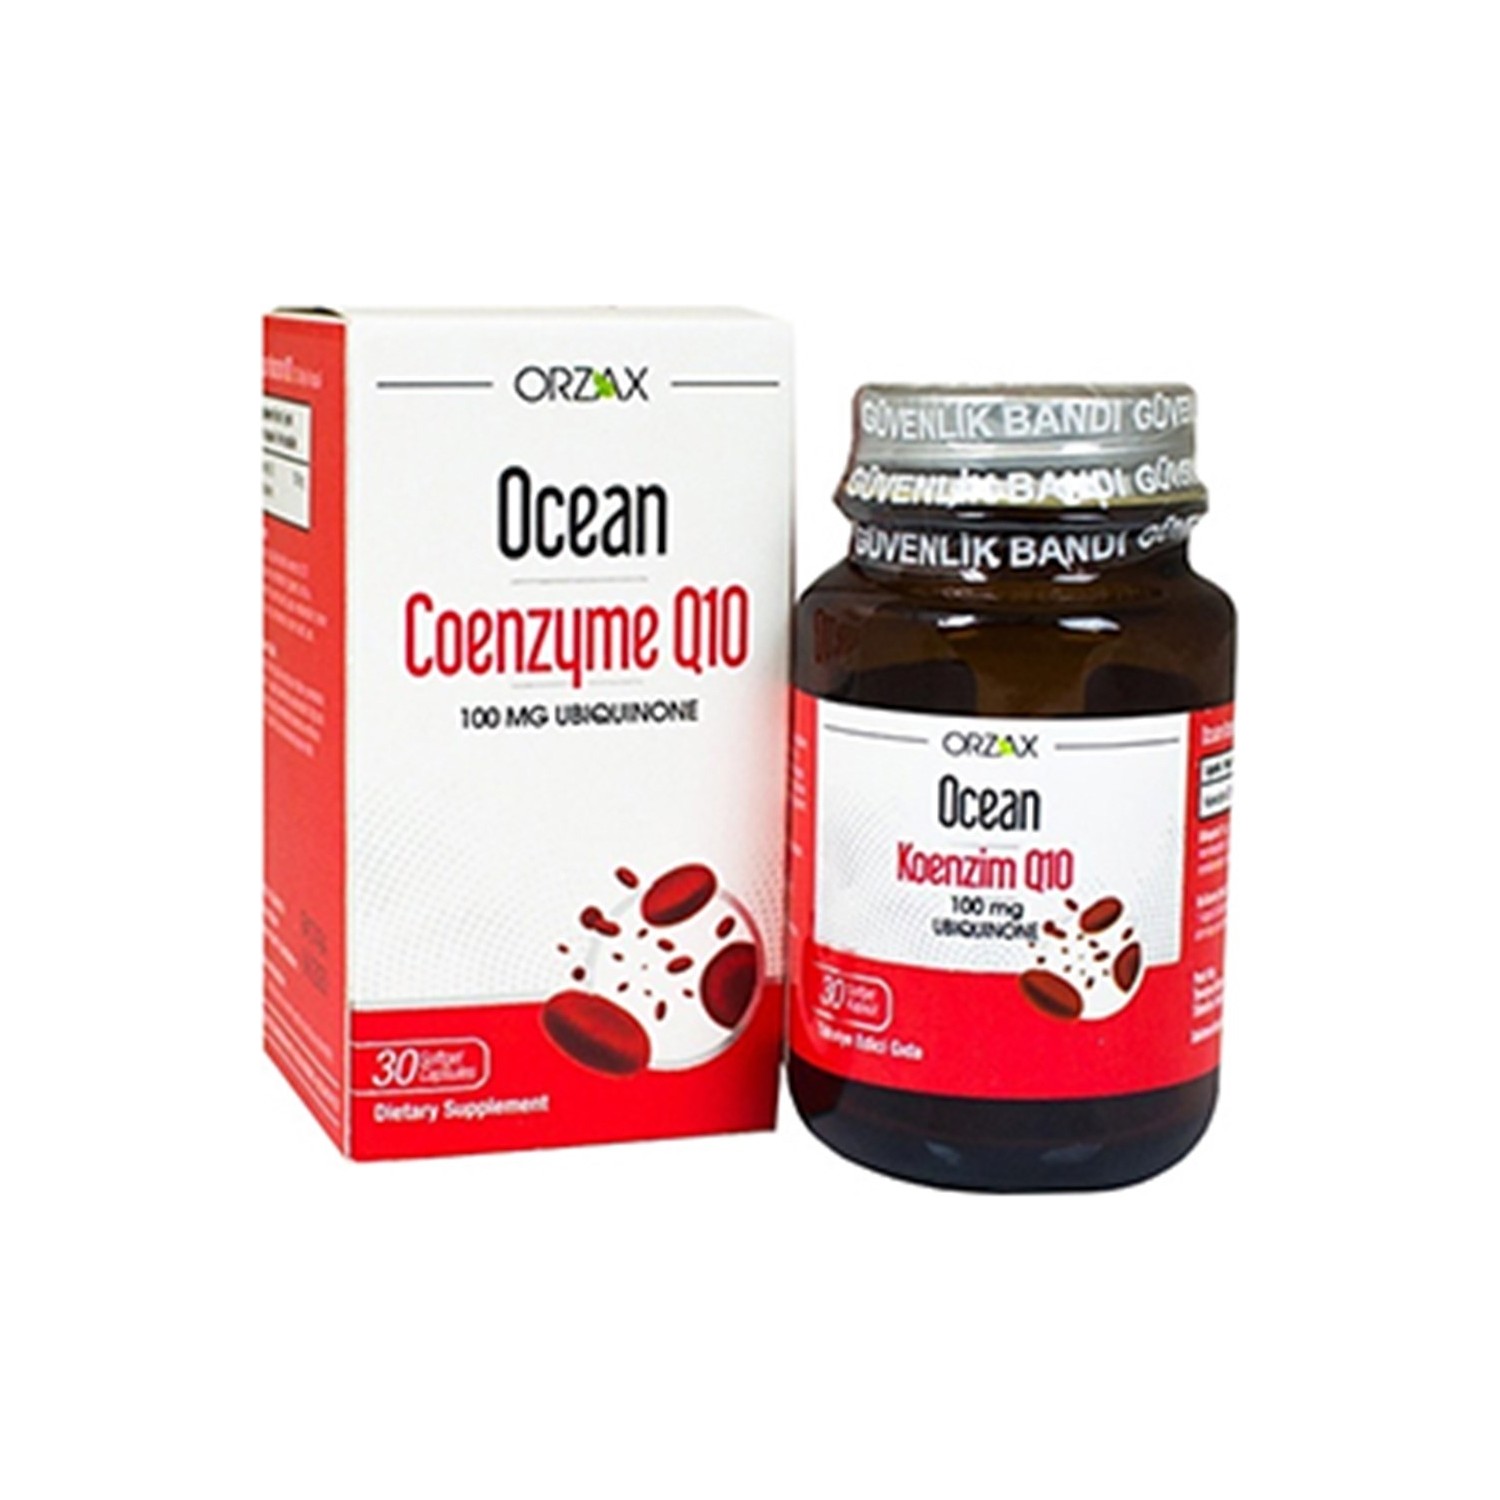 dr mercola липосомальный коэнзим q10 100 мг 30 капсул Коэнзим Q10 Ocean 100 мг, 30 капсул